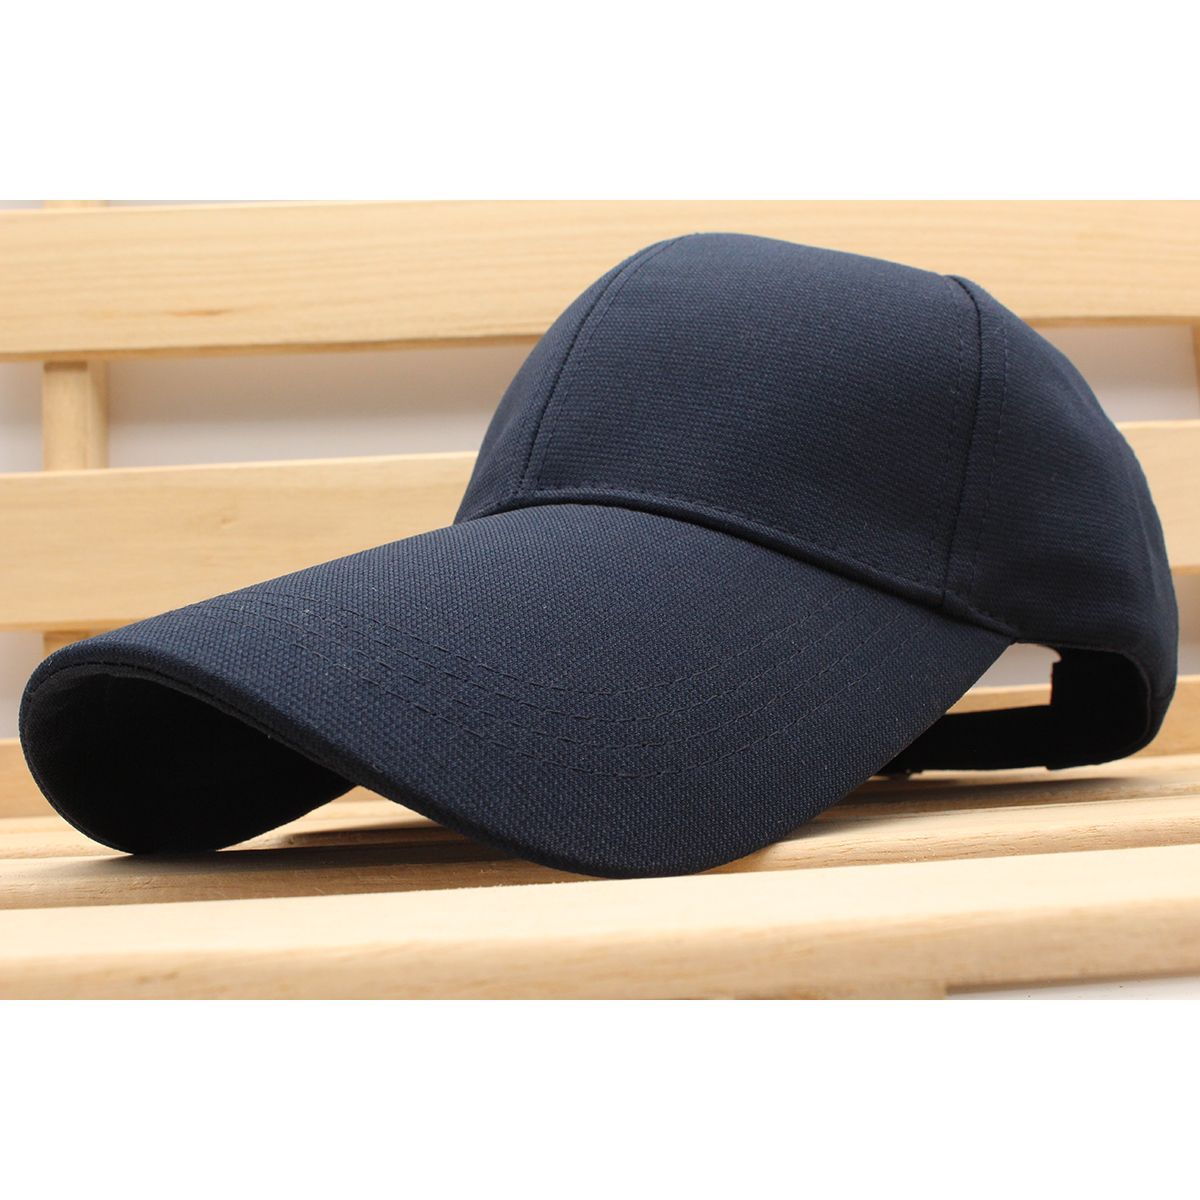 野球帽子 ツバ長10.5cm カジュアル派 ポリ キャップ 帽子 56cm~58cm NV メンズ レディース CC38-2